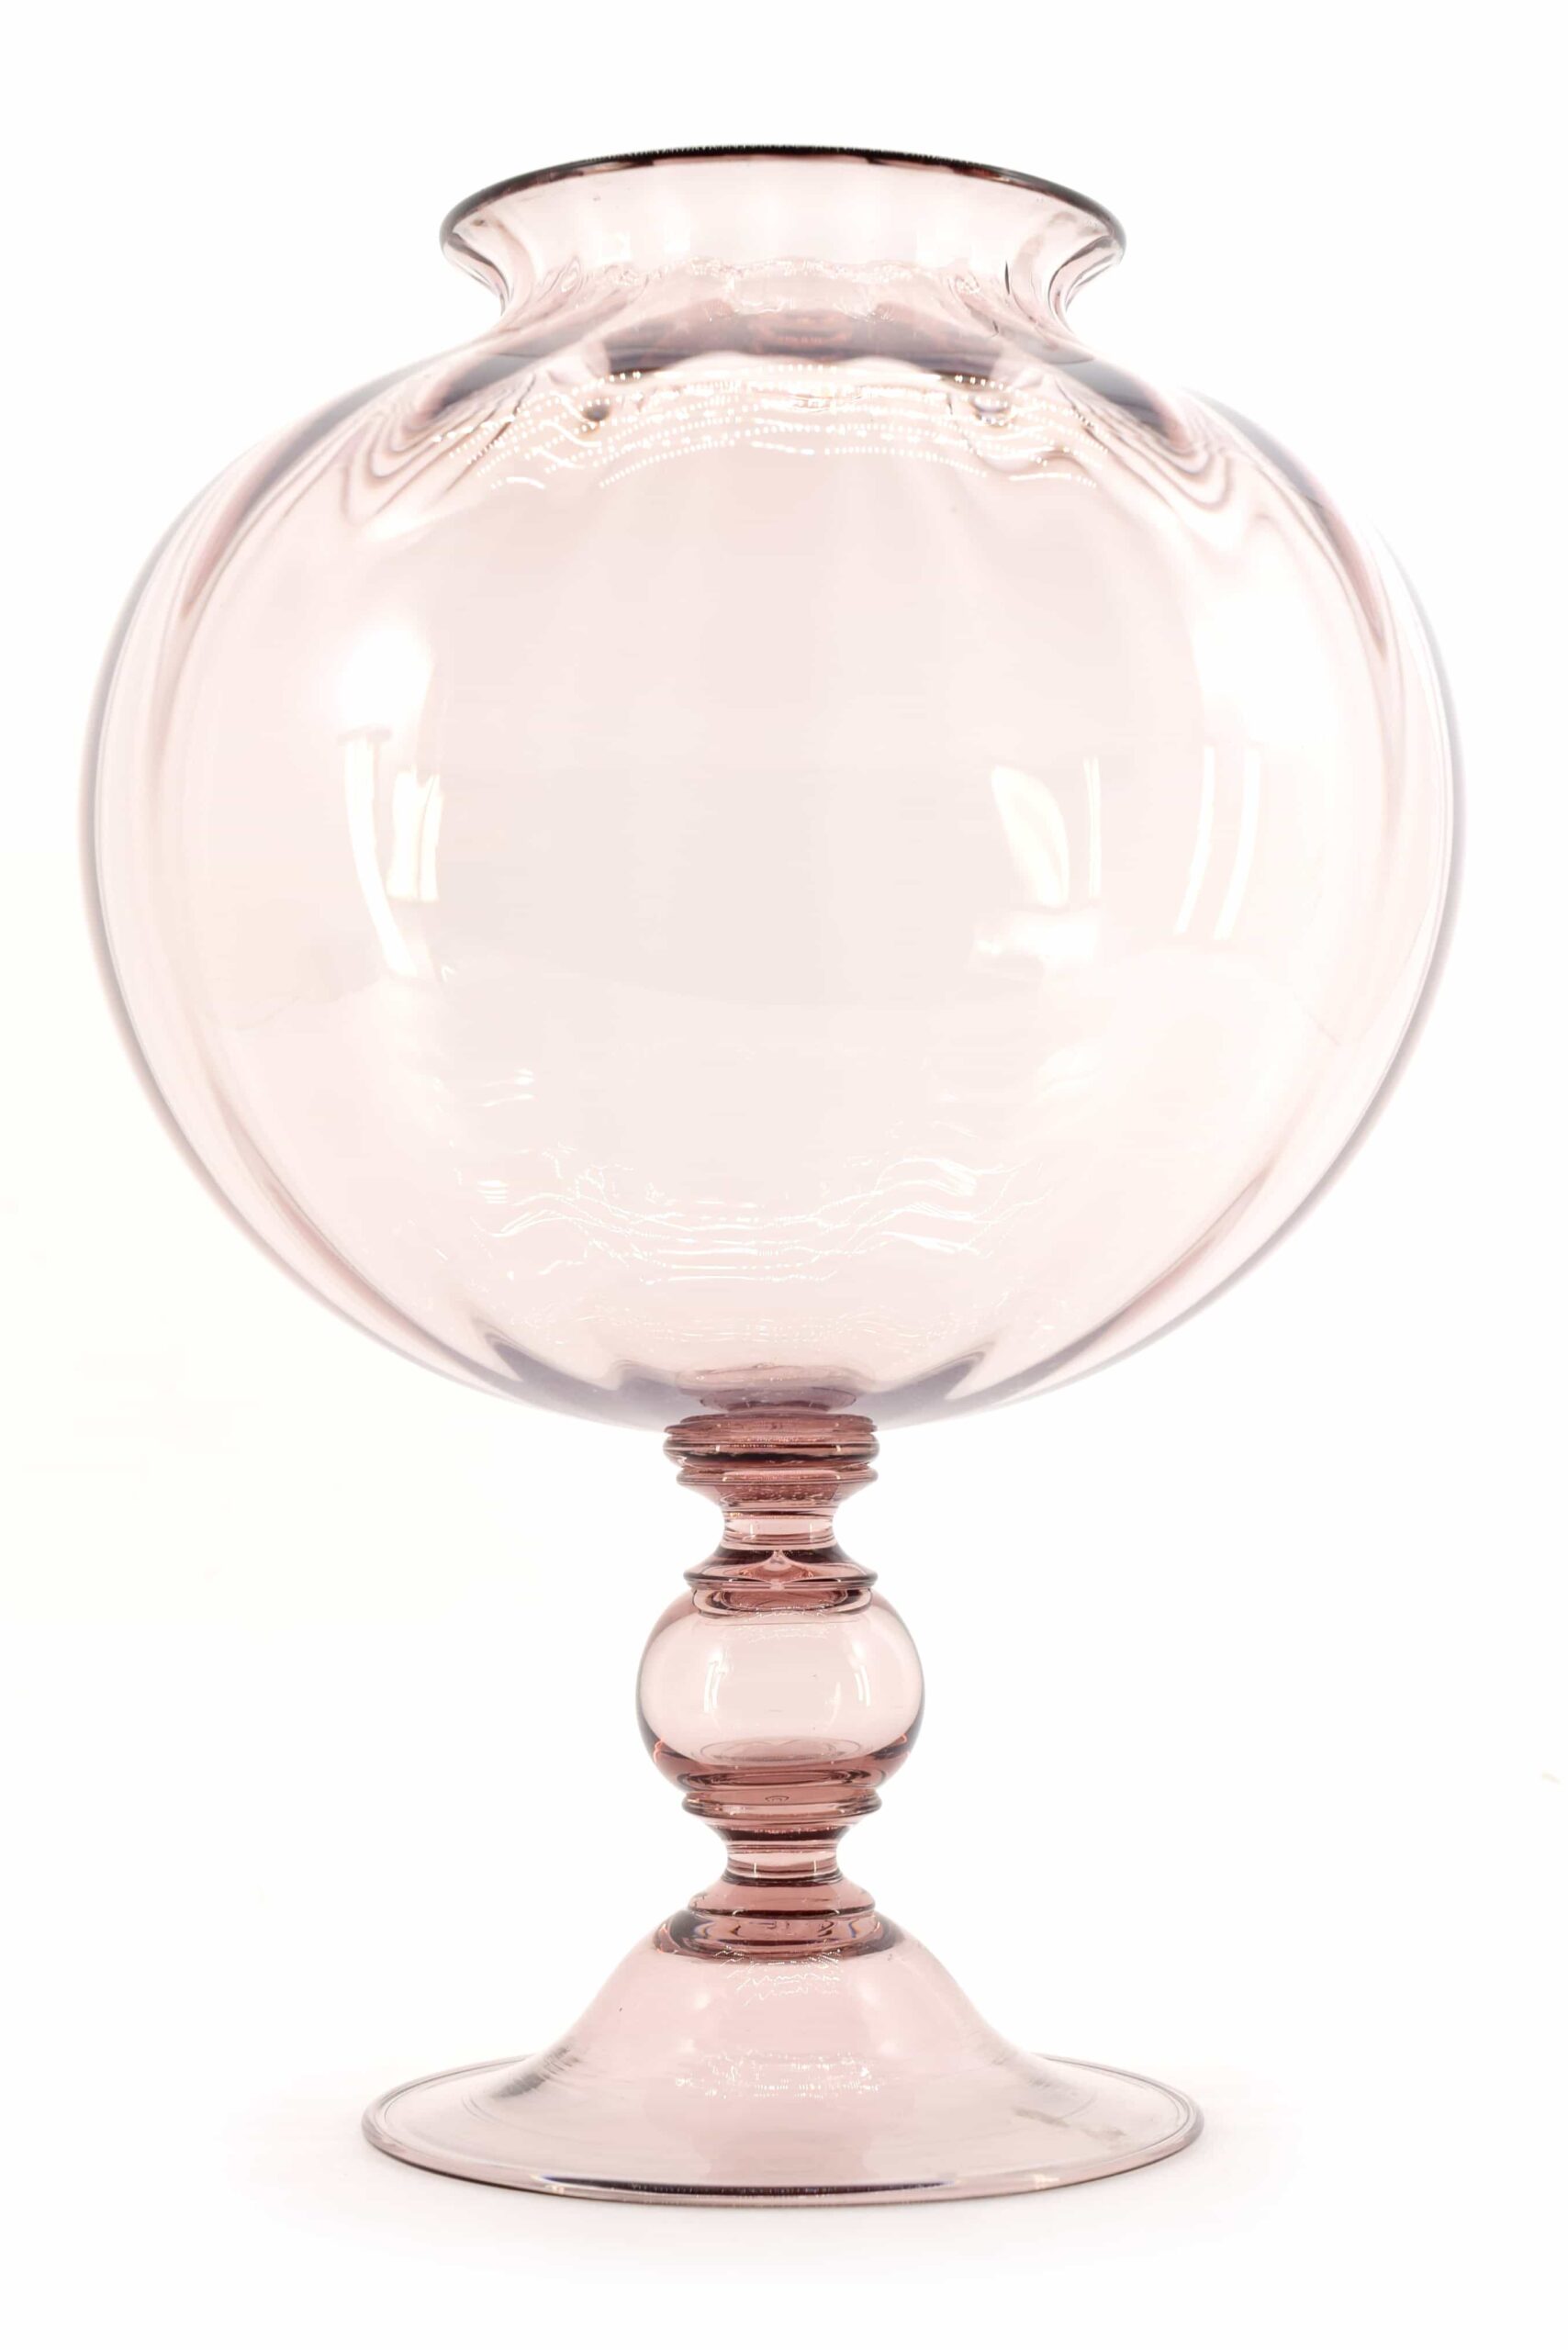 Vittorio Zecchin vase in Murano glass